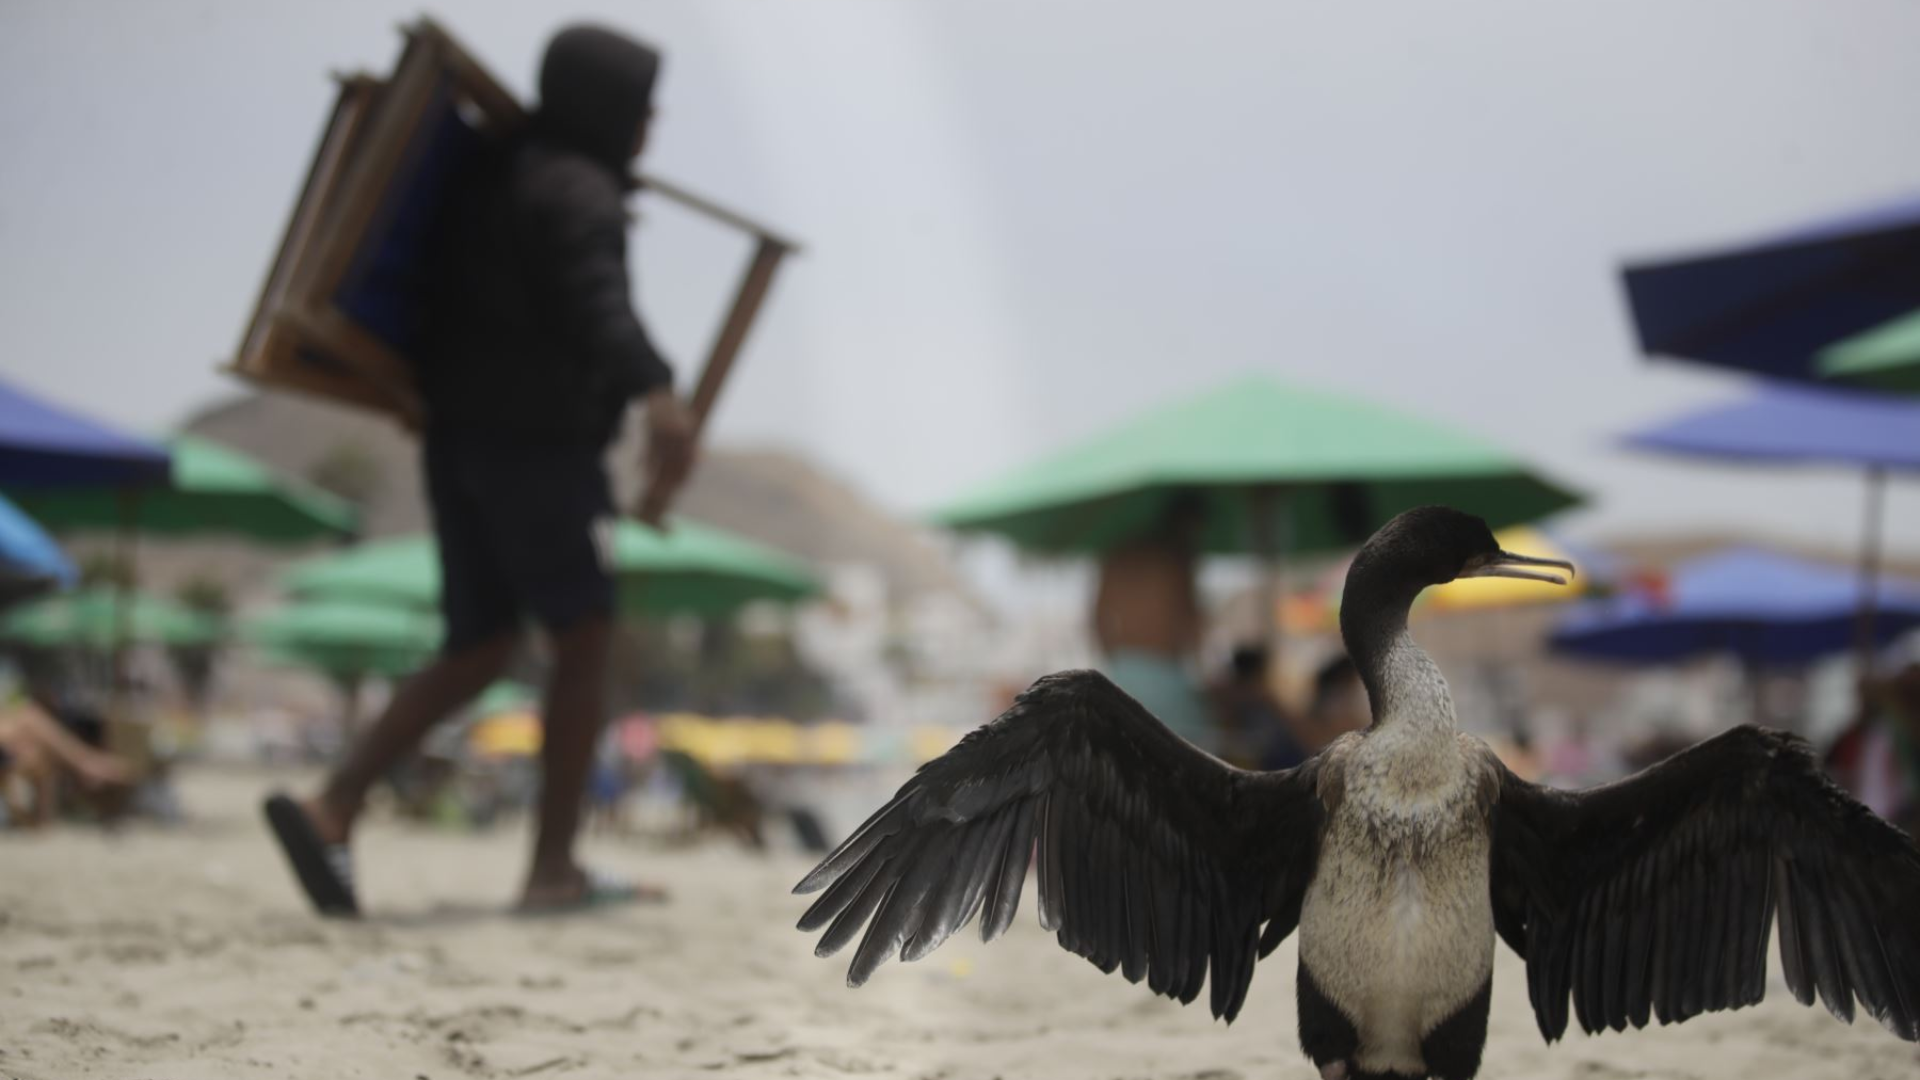 Gripe aviar en humanos fue detectada en Chile, ¿es posible que llegue al Perú?